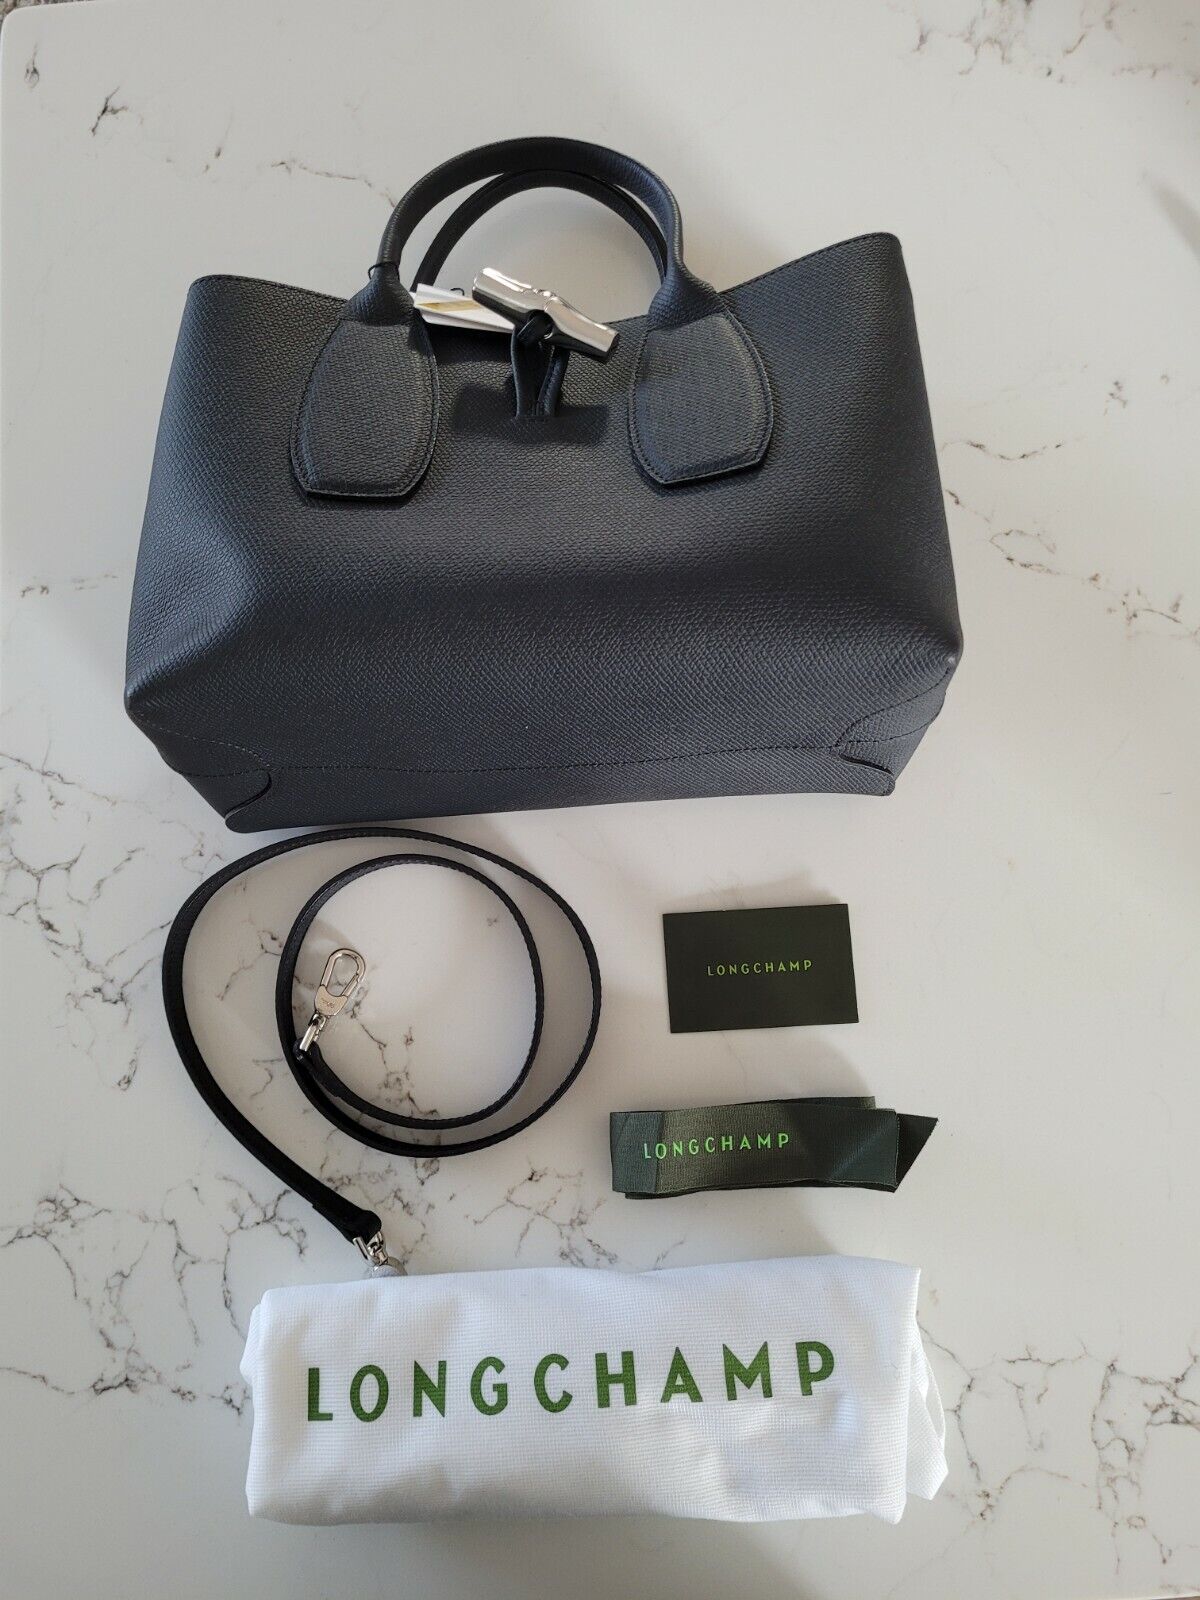 Longchamp Roseau Top Handle Bag in Medium, Black - comes w/ tag & dust  bag